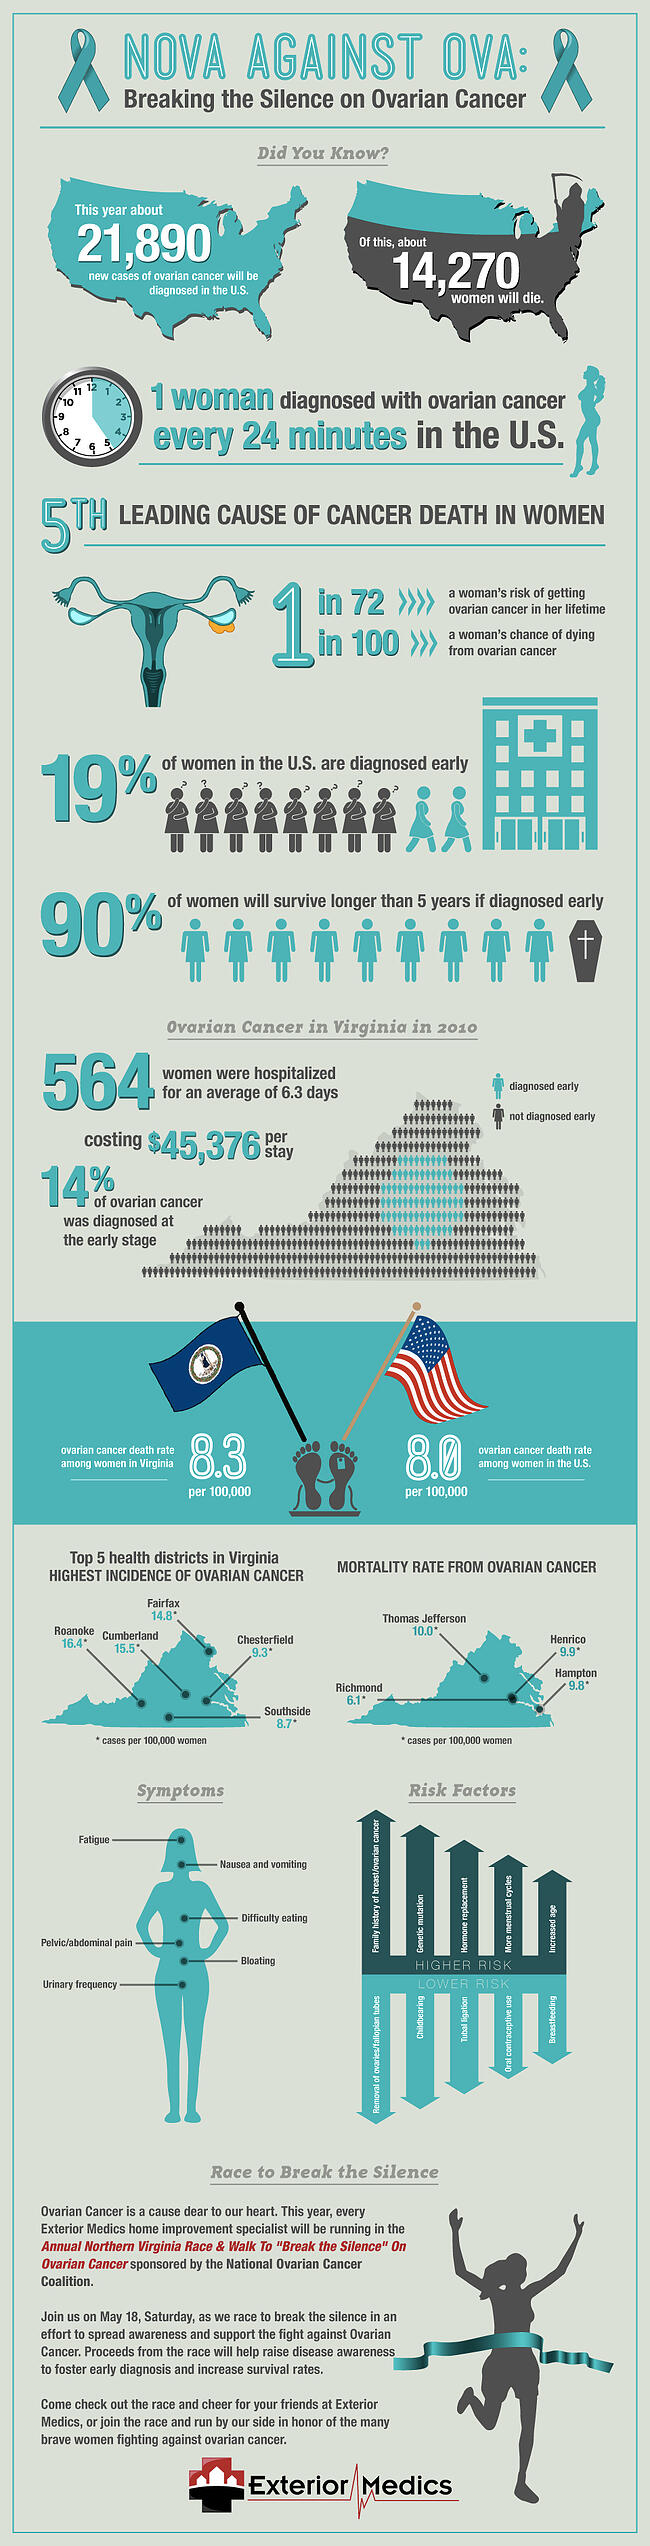 OvarianCancer infographic (2)